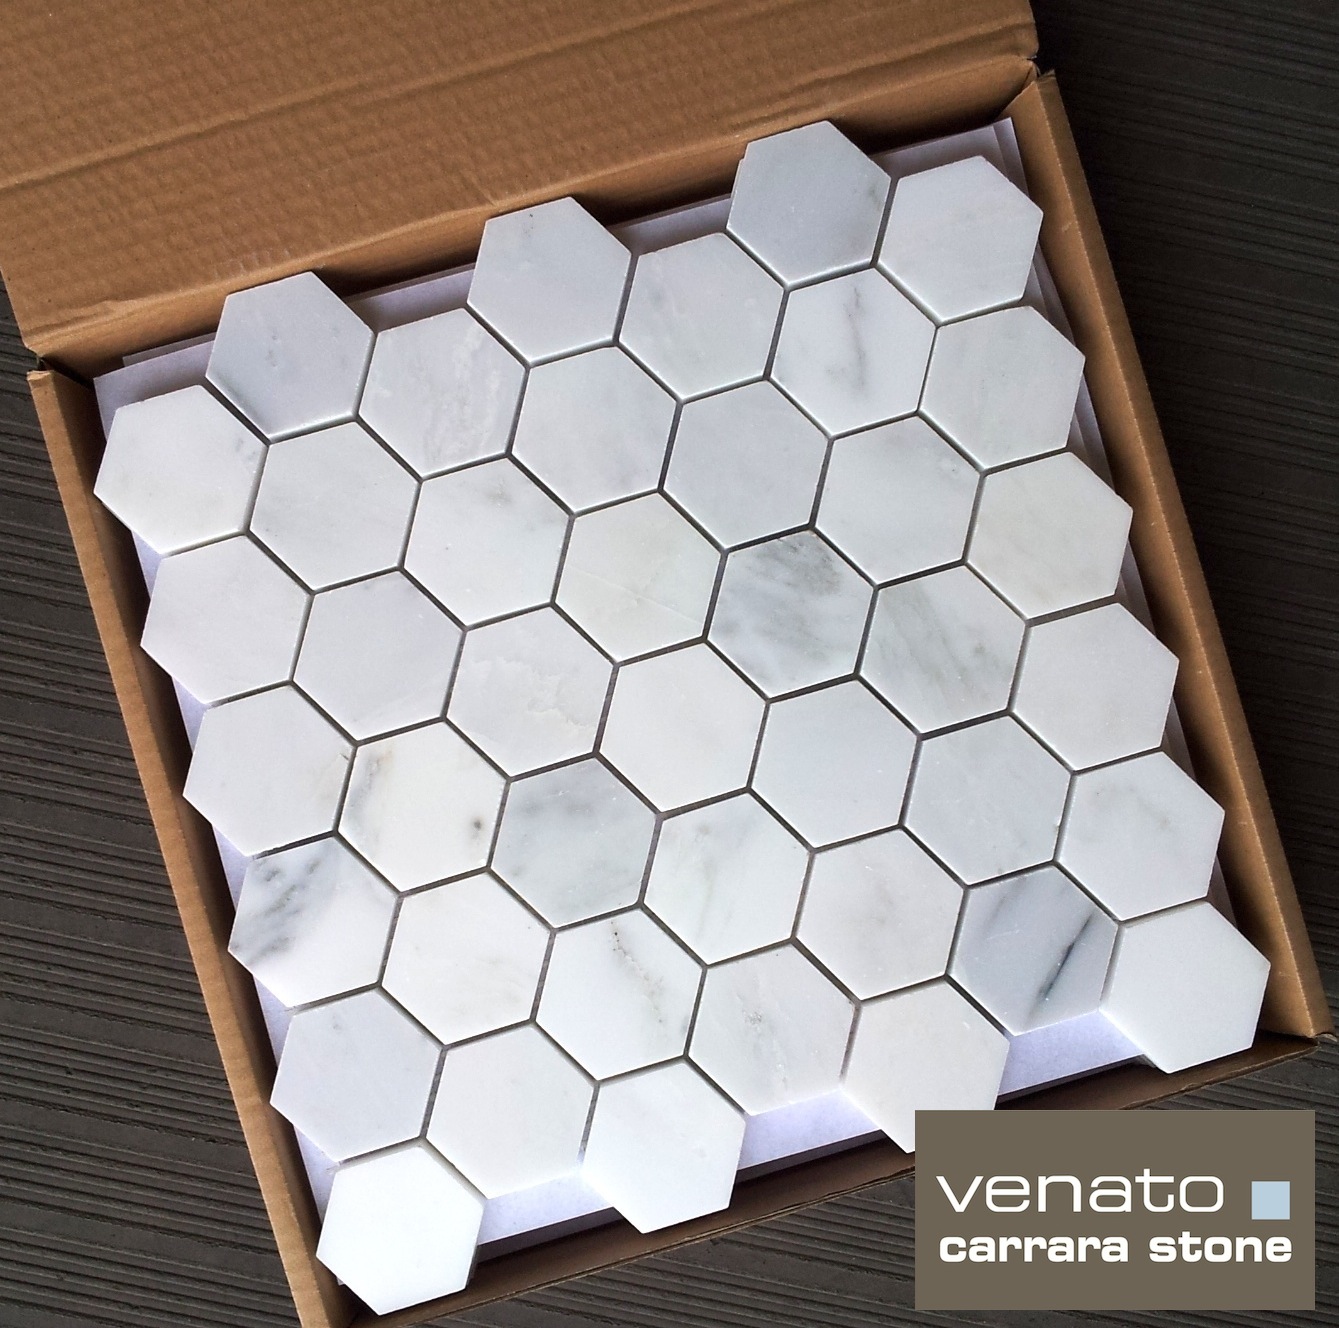 Carrara Venato 2" Hexagon Mosaic